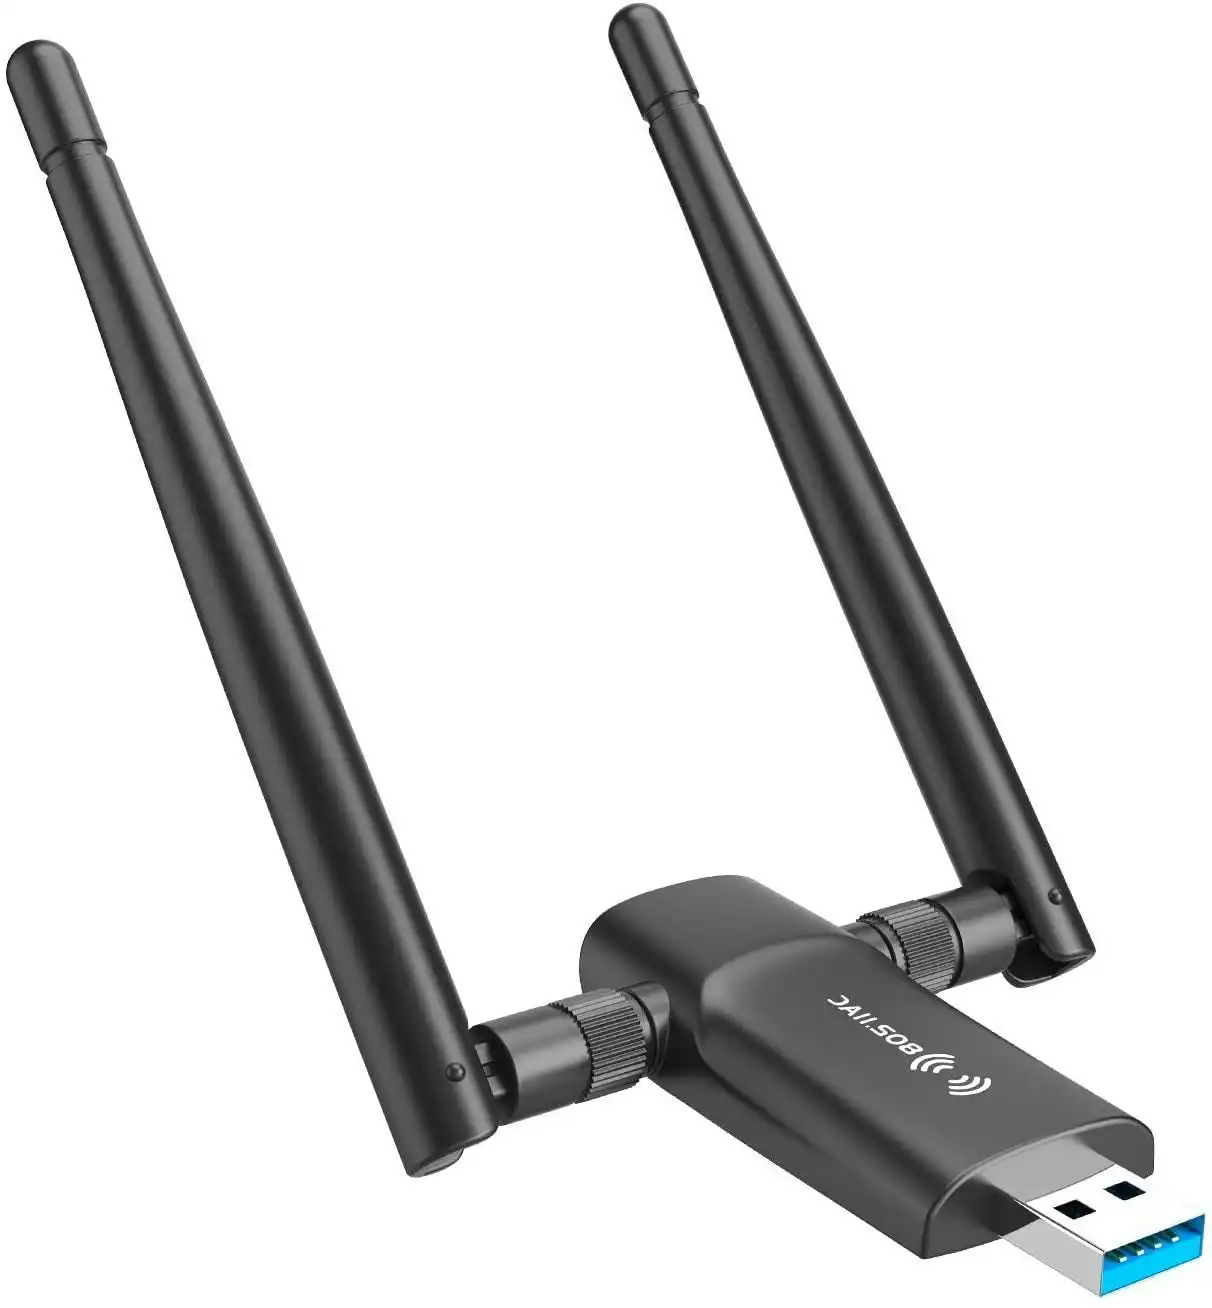 Nineplus Wireless USB WiFi Adapter for PC - 802.11AC 1200Mbps Dual 5Dbi Antennas 5G/2.4G WiFi USB for PC Desktop Laptop MAC Windows 10/8/8.1/7/Vista/X